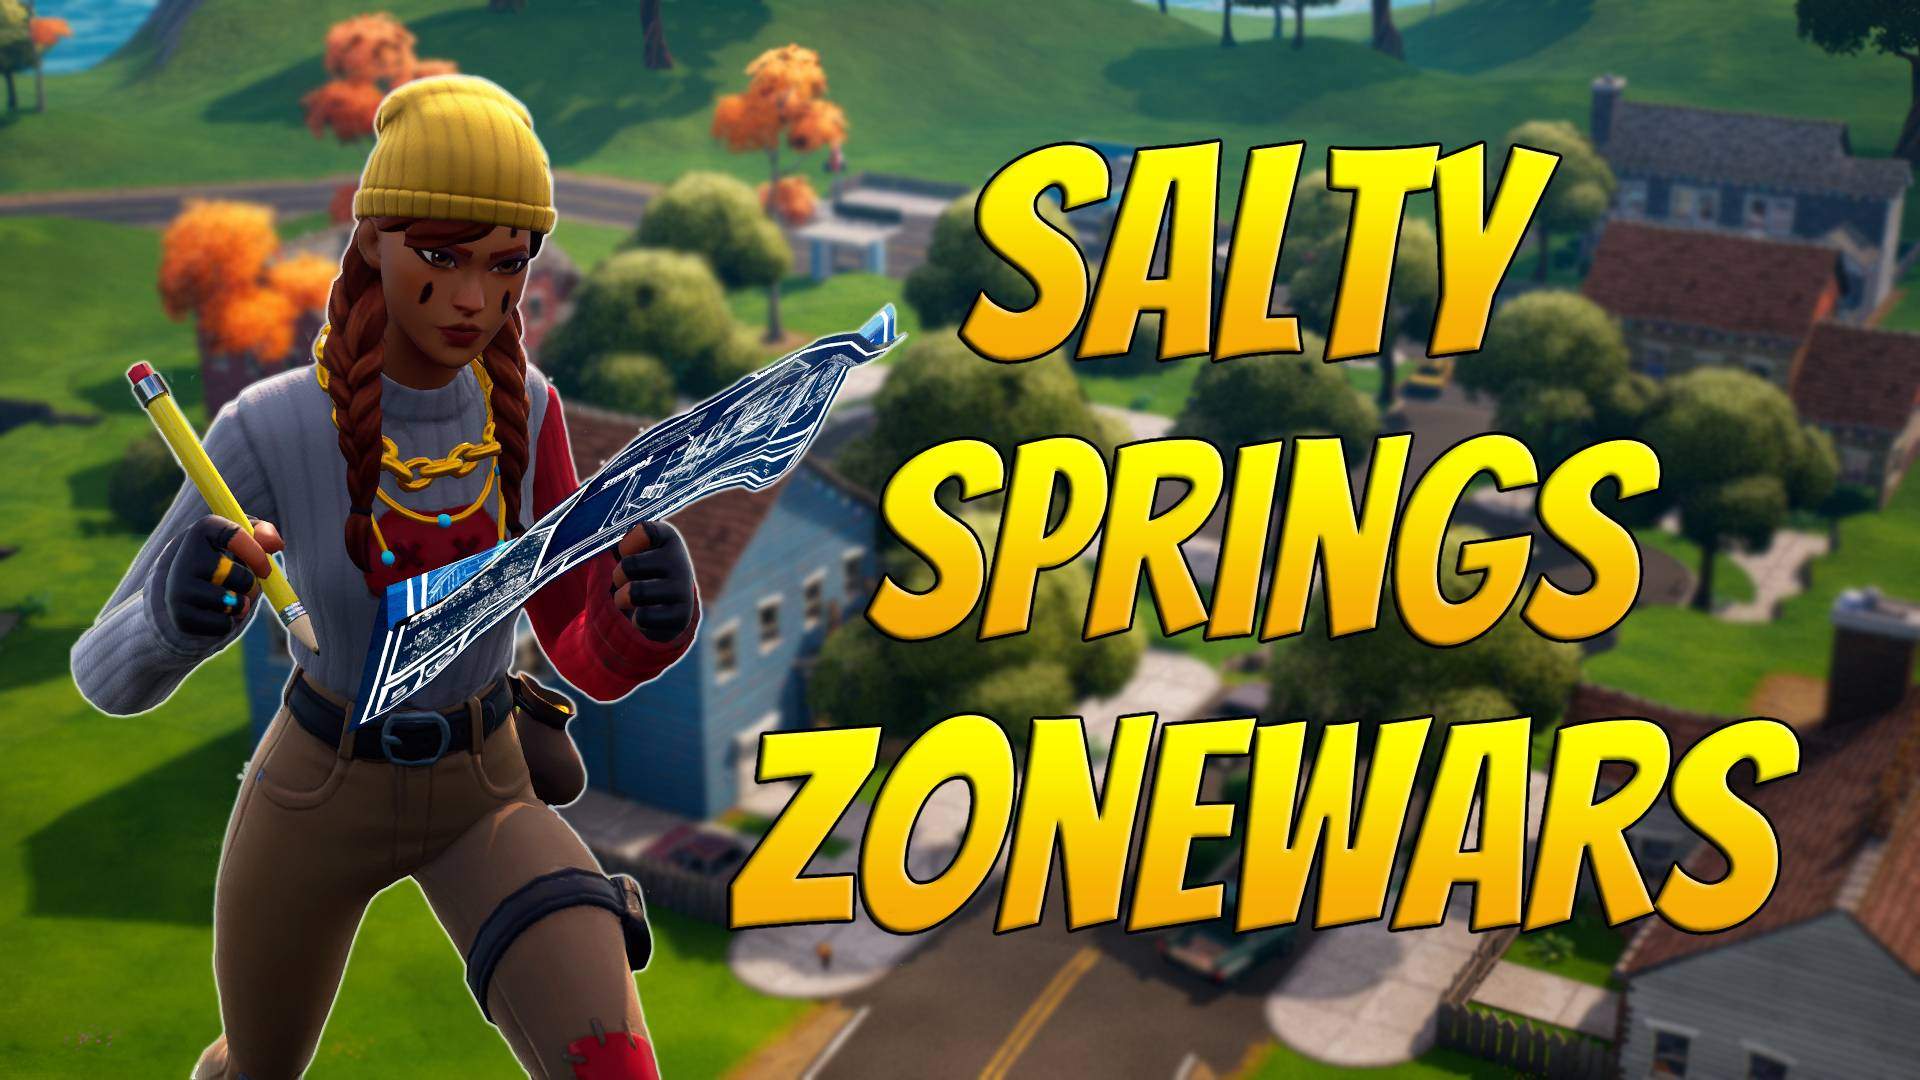 Salty Springs Zonewars